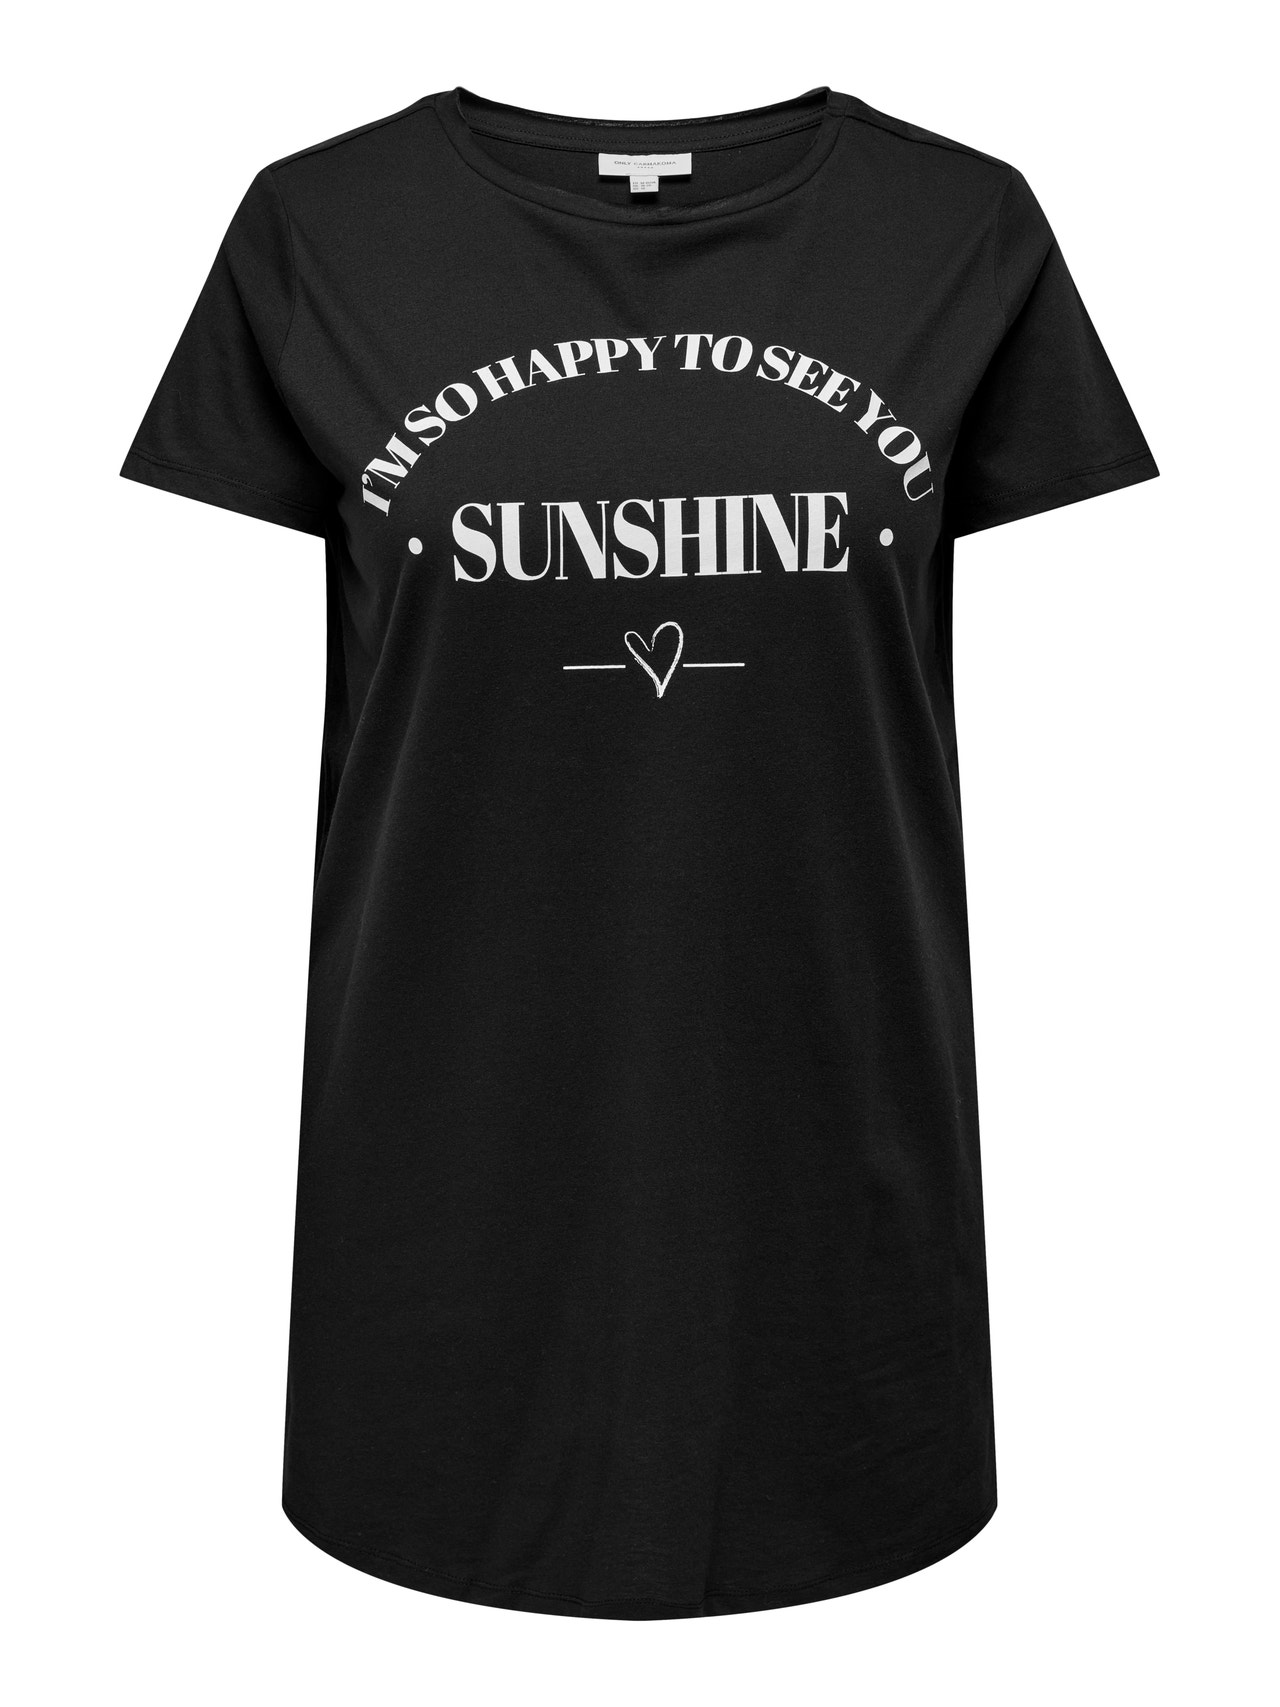 ONLY Curvy long T-shirt -Black - 15289125